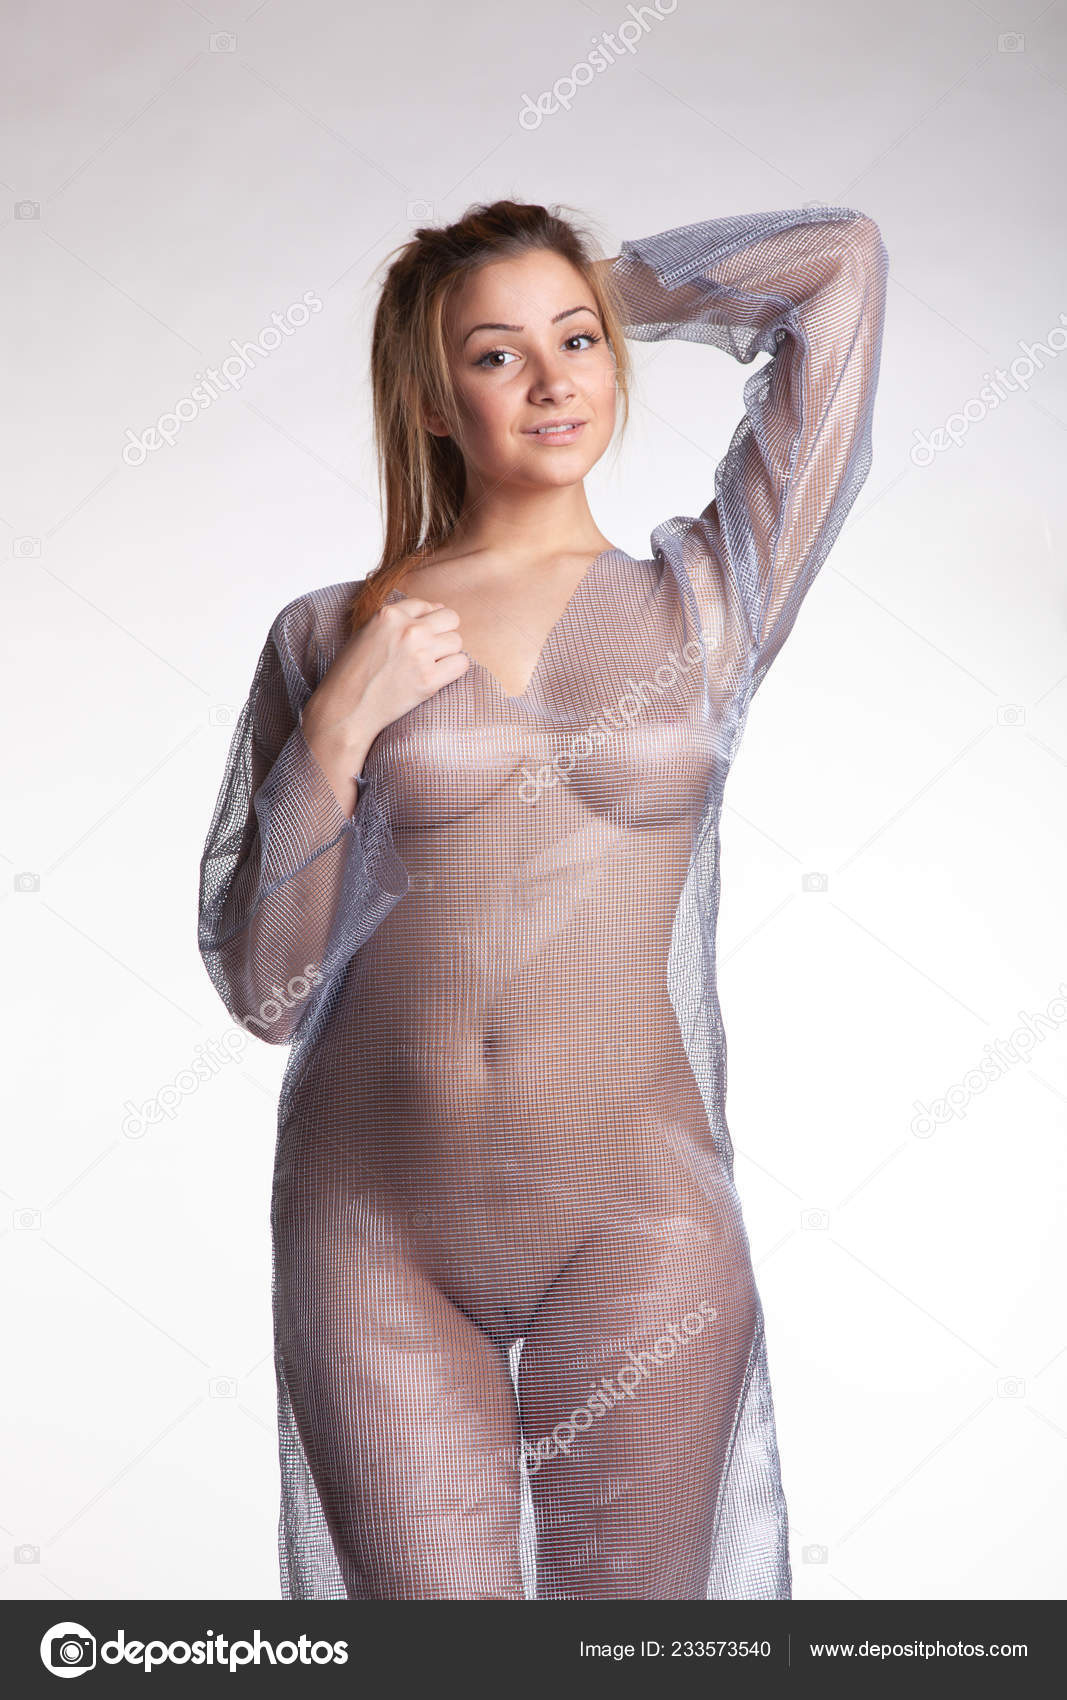 https://st4n.depositphotos.com/10086424/23357/i/1600/depositphotos_233573540-stock-photo-young-beautiful-girl-posing-nude.jpg